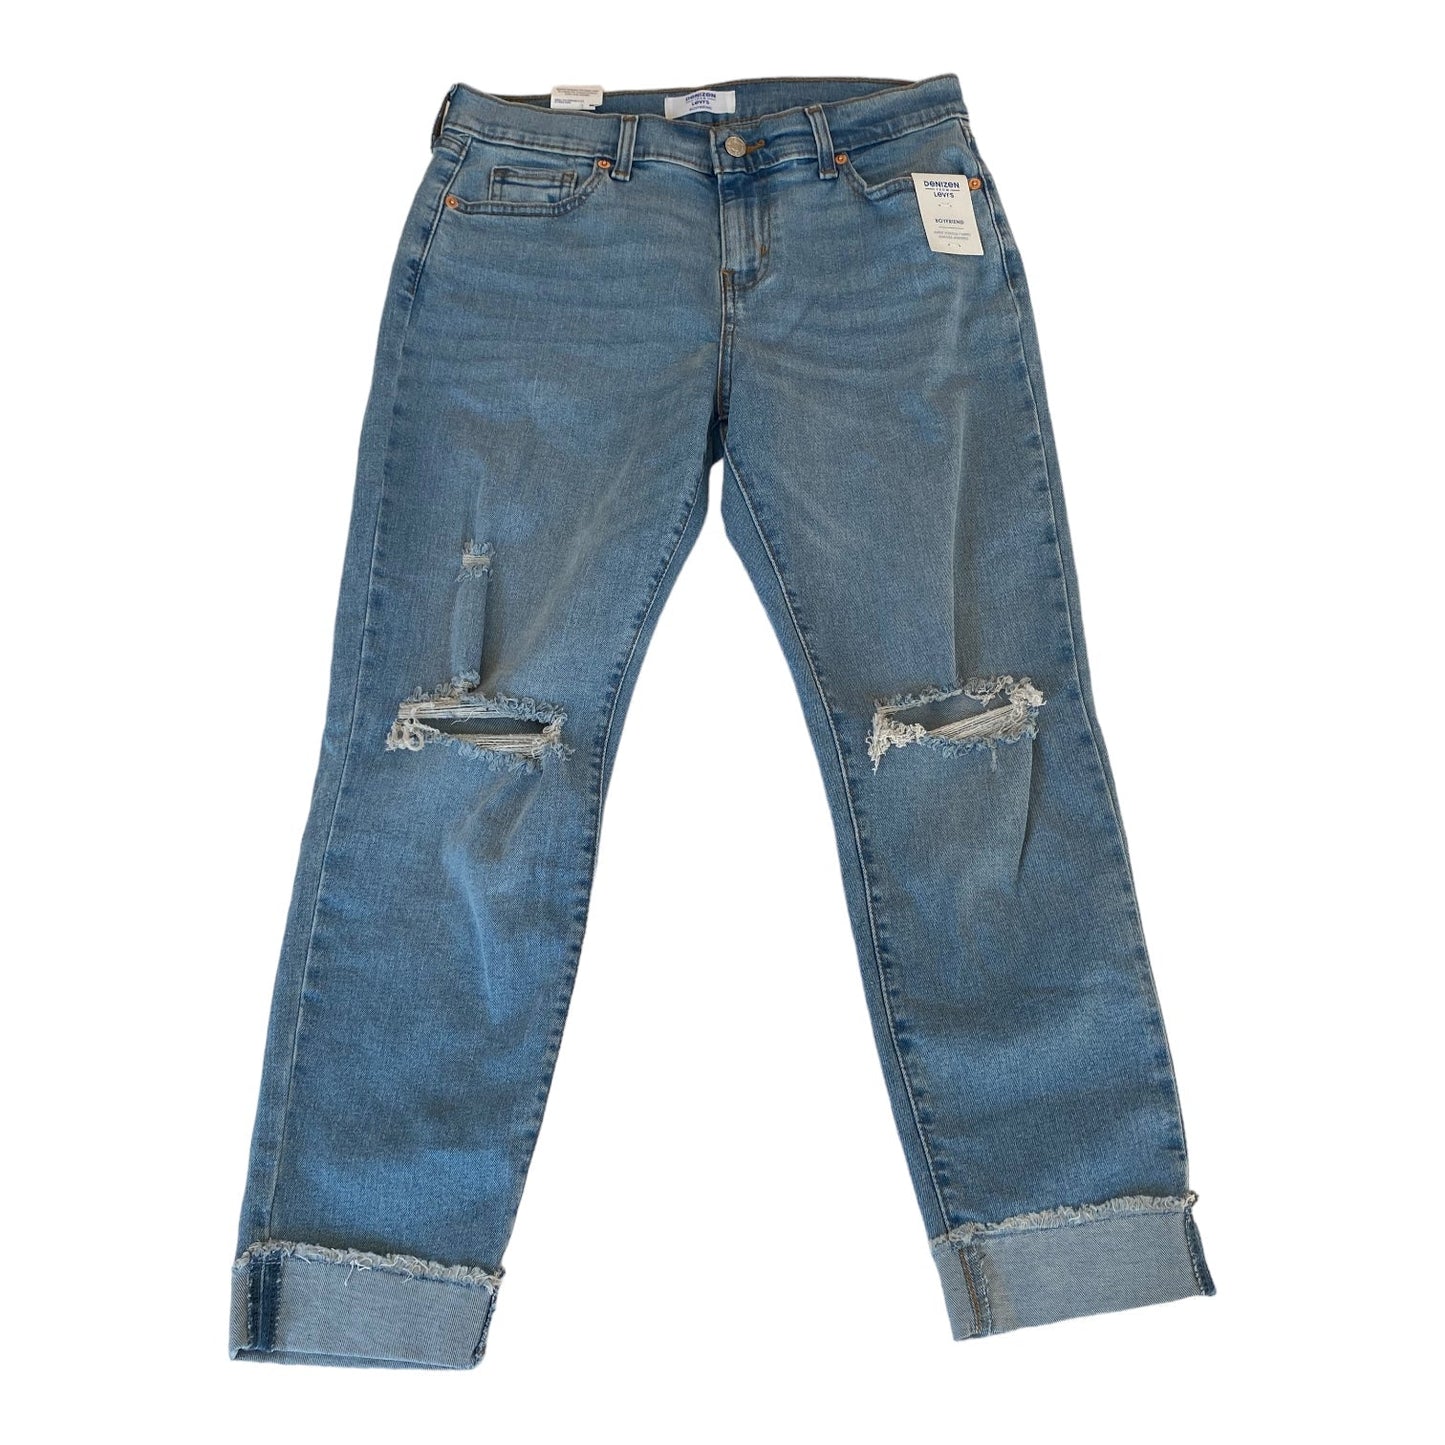 Blue Denim Jeans Boyfriend Denizen By Levis, Size 2